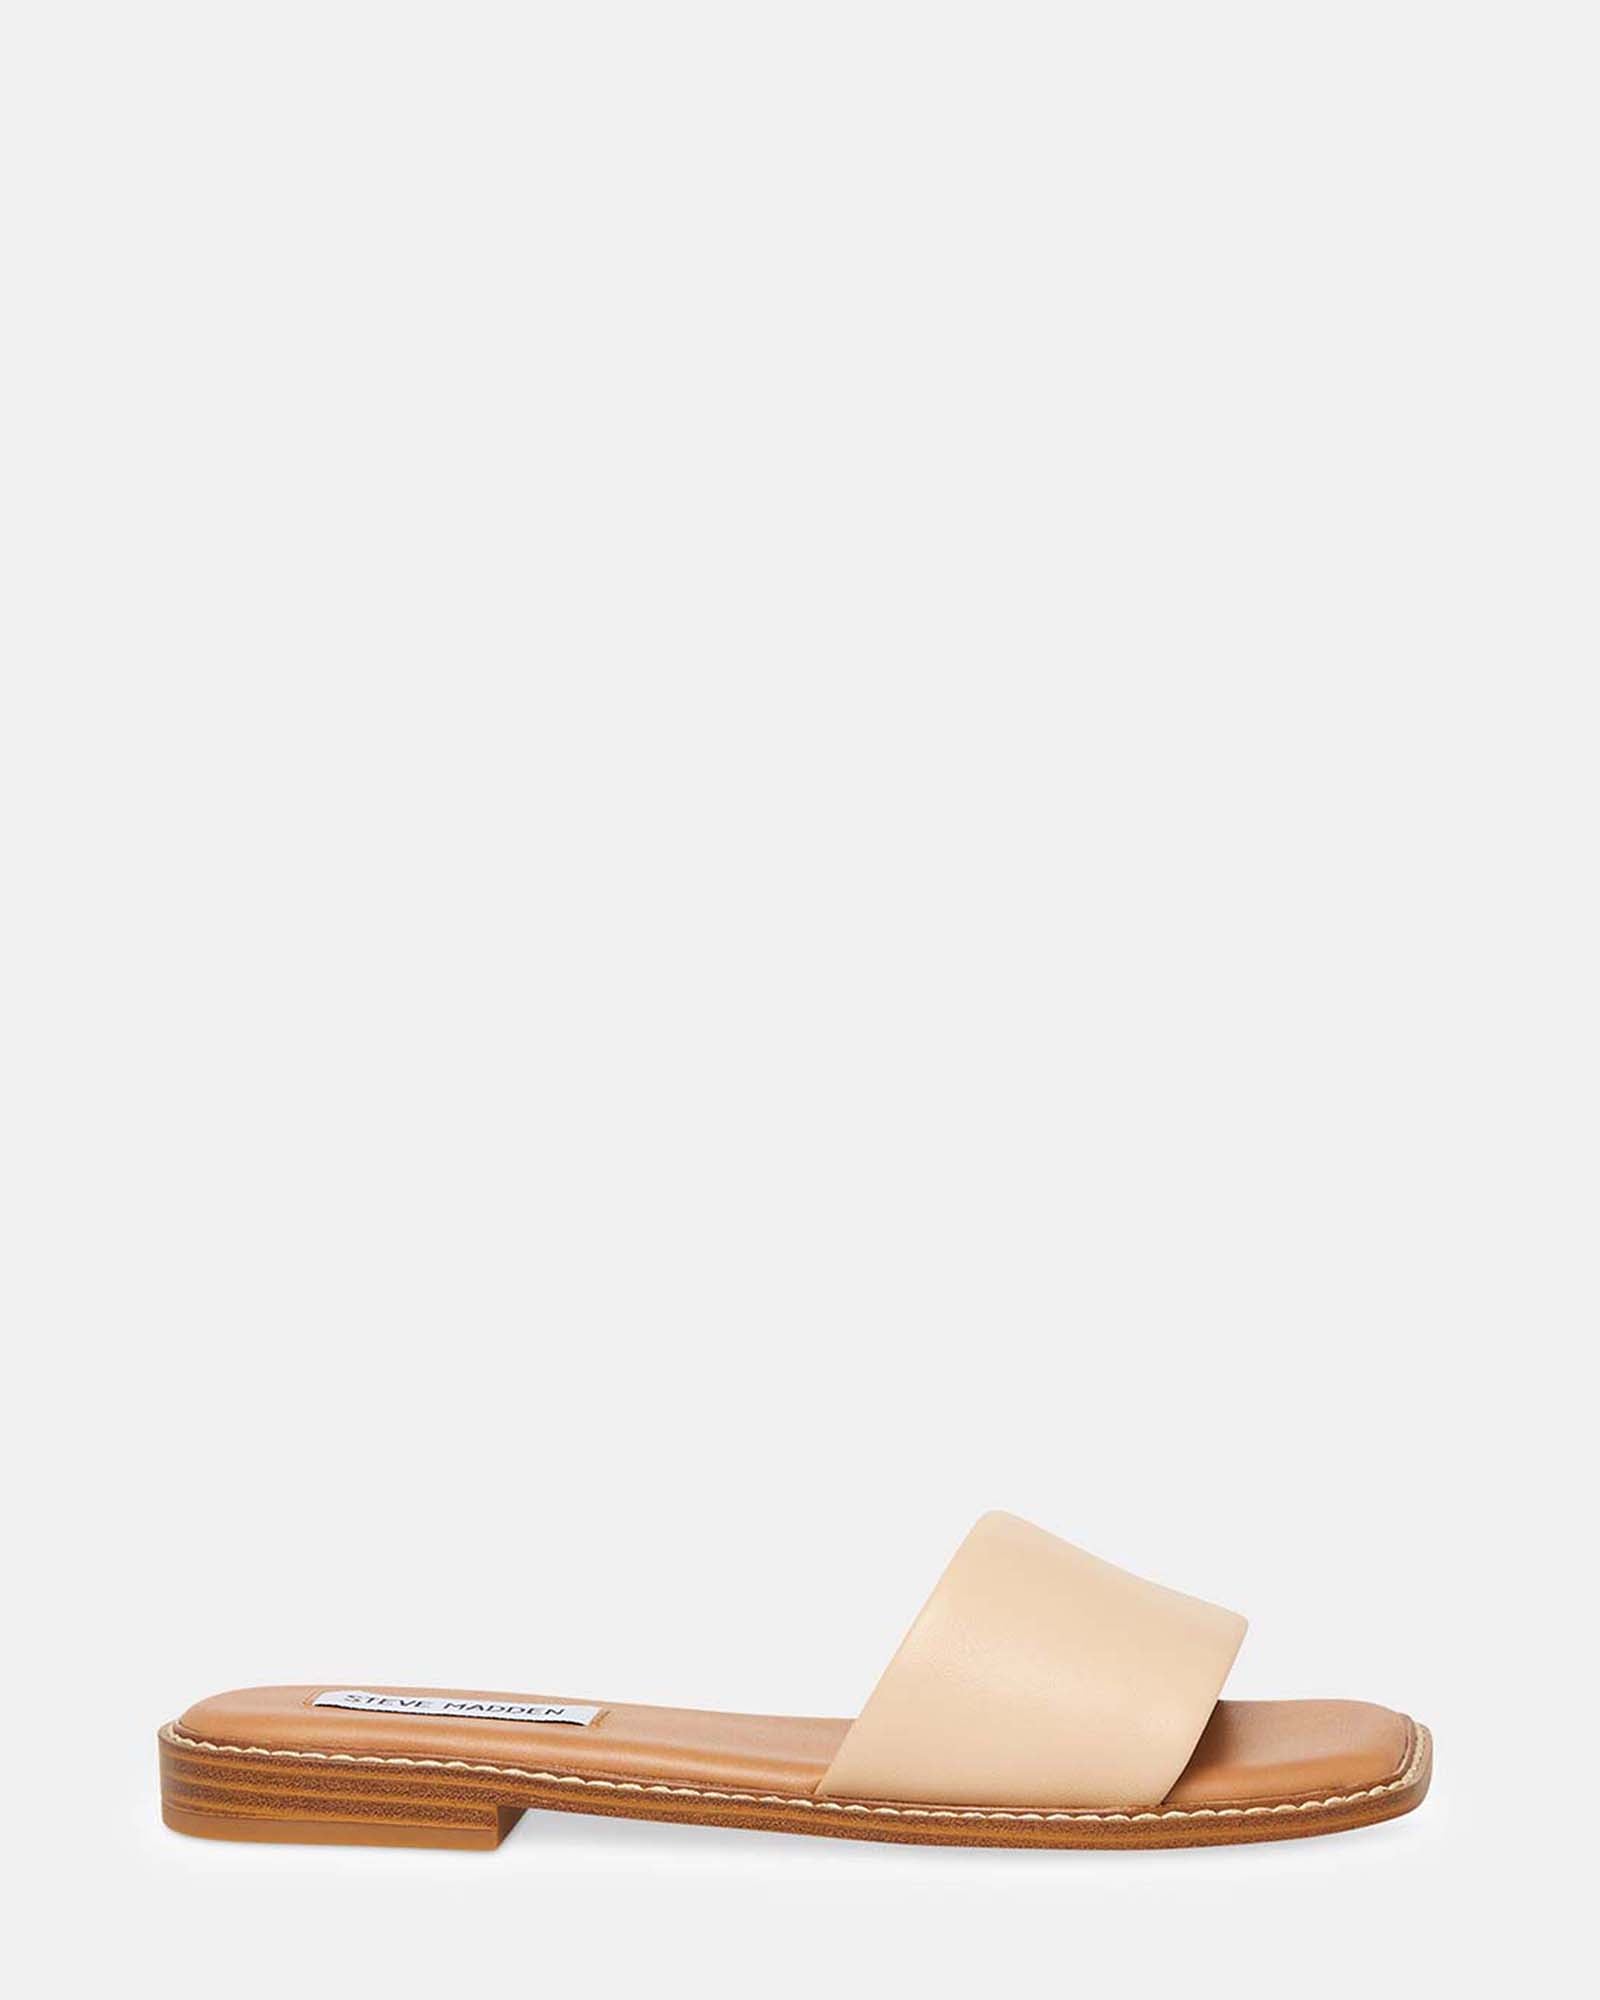 SANDRA Tan Leather Square Toe Slide Sandal | Women's Sandals – Steve Madden